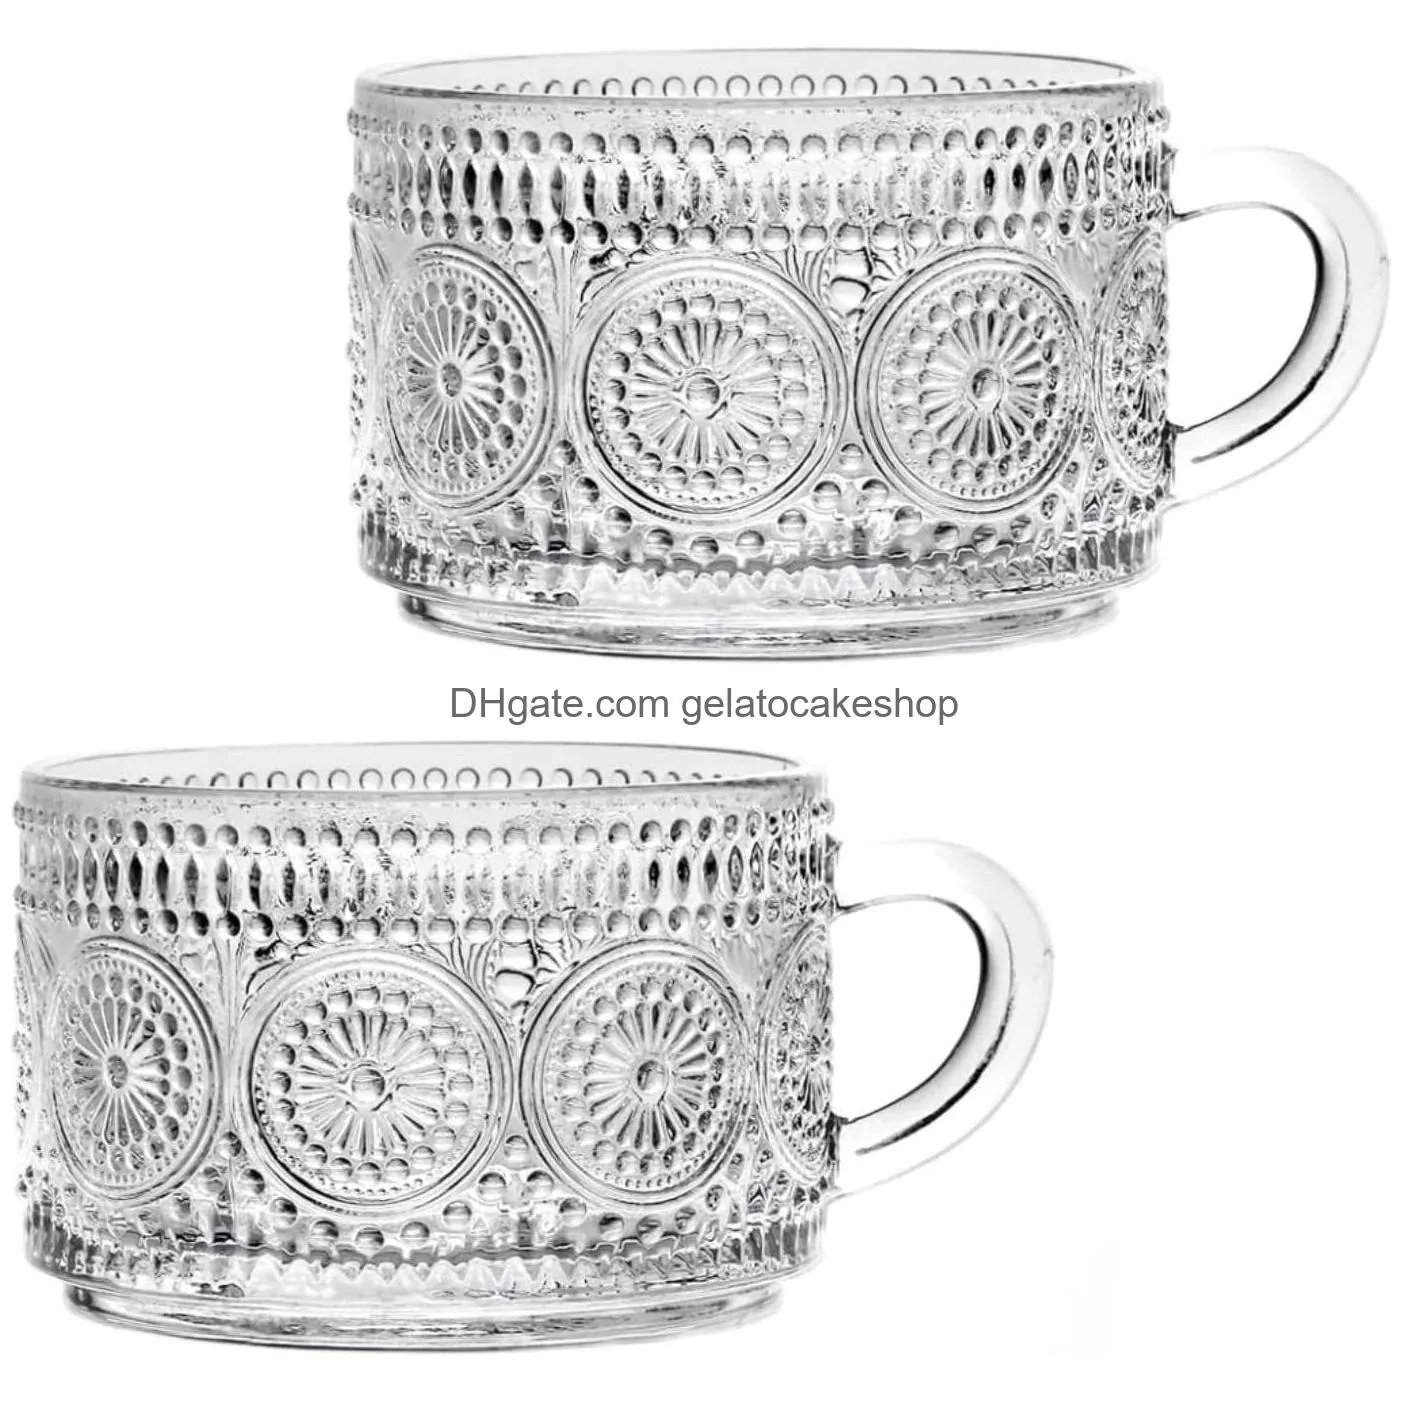 embossed pattern glass cup set delicate coffee water tea milk drinks mug large capacity breakfast cups drinking utensils glasses